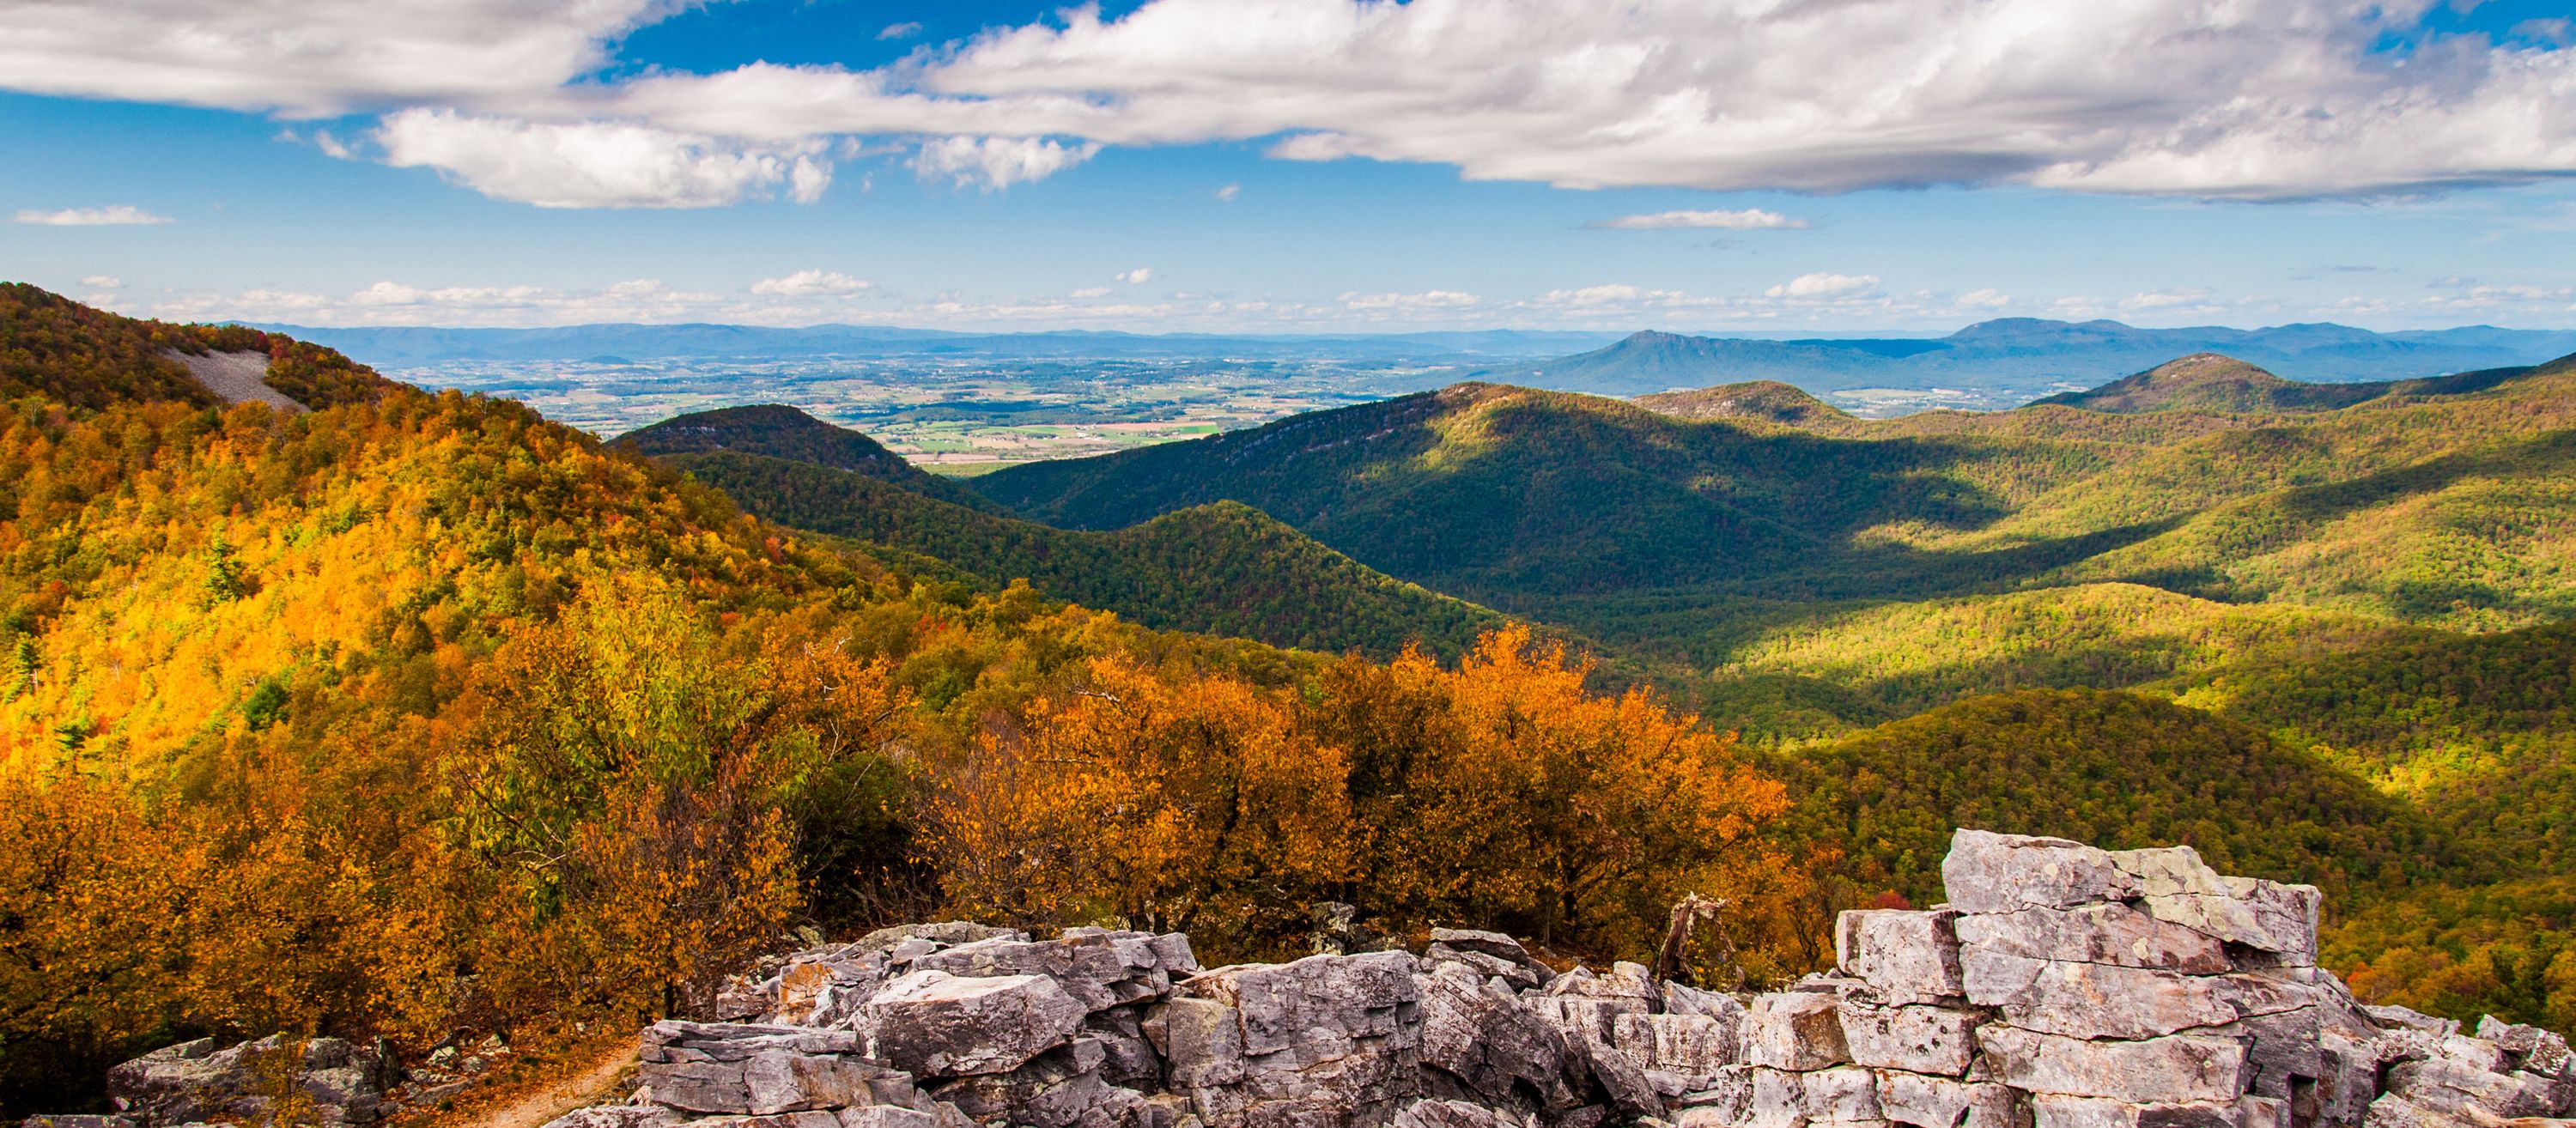 Das Shenandoah Valley und die Blue Ridge Mountains, Shenandoah National Park, Virginia